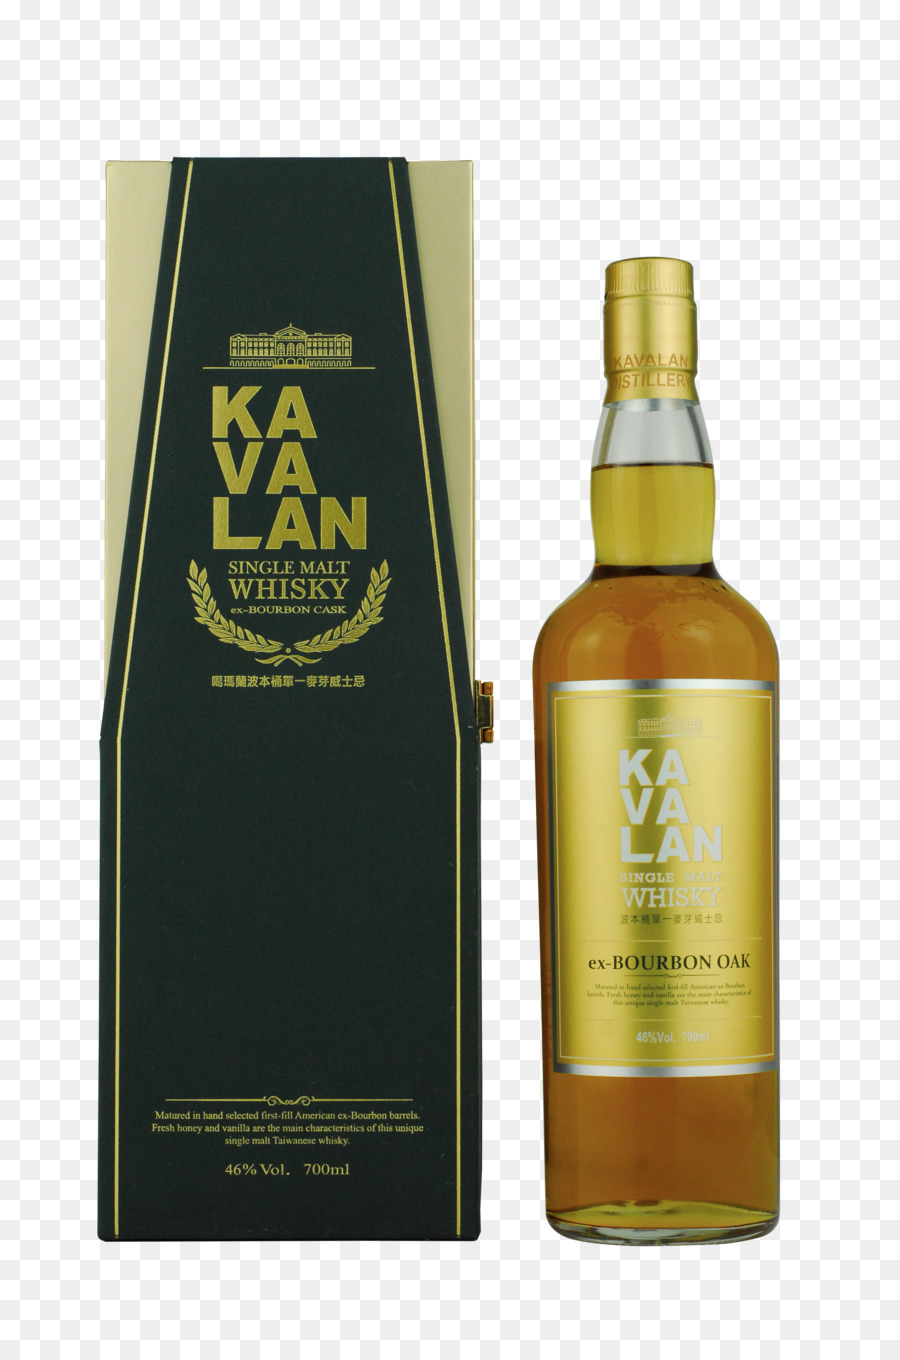 Bourbon whiskey Kauwera chưng cất Single malt whisky - scotch malt whisky xã hội